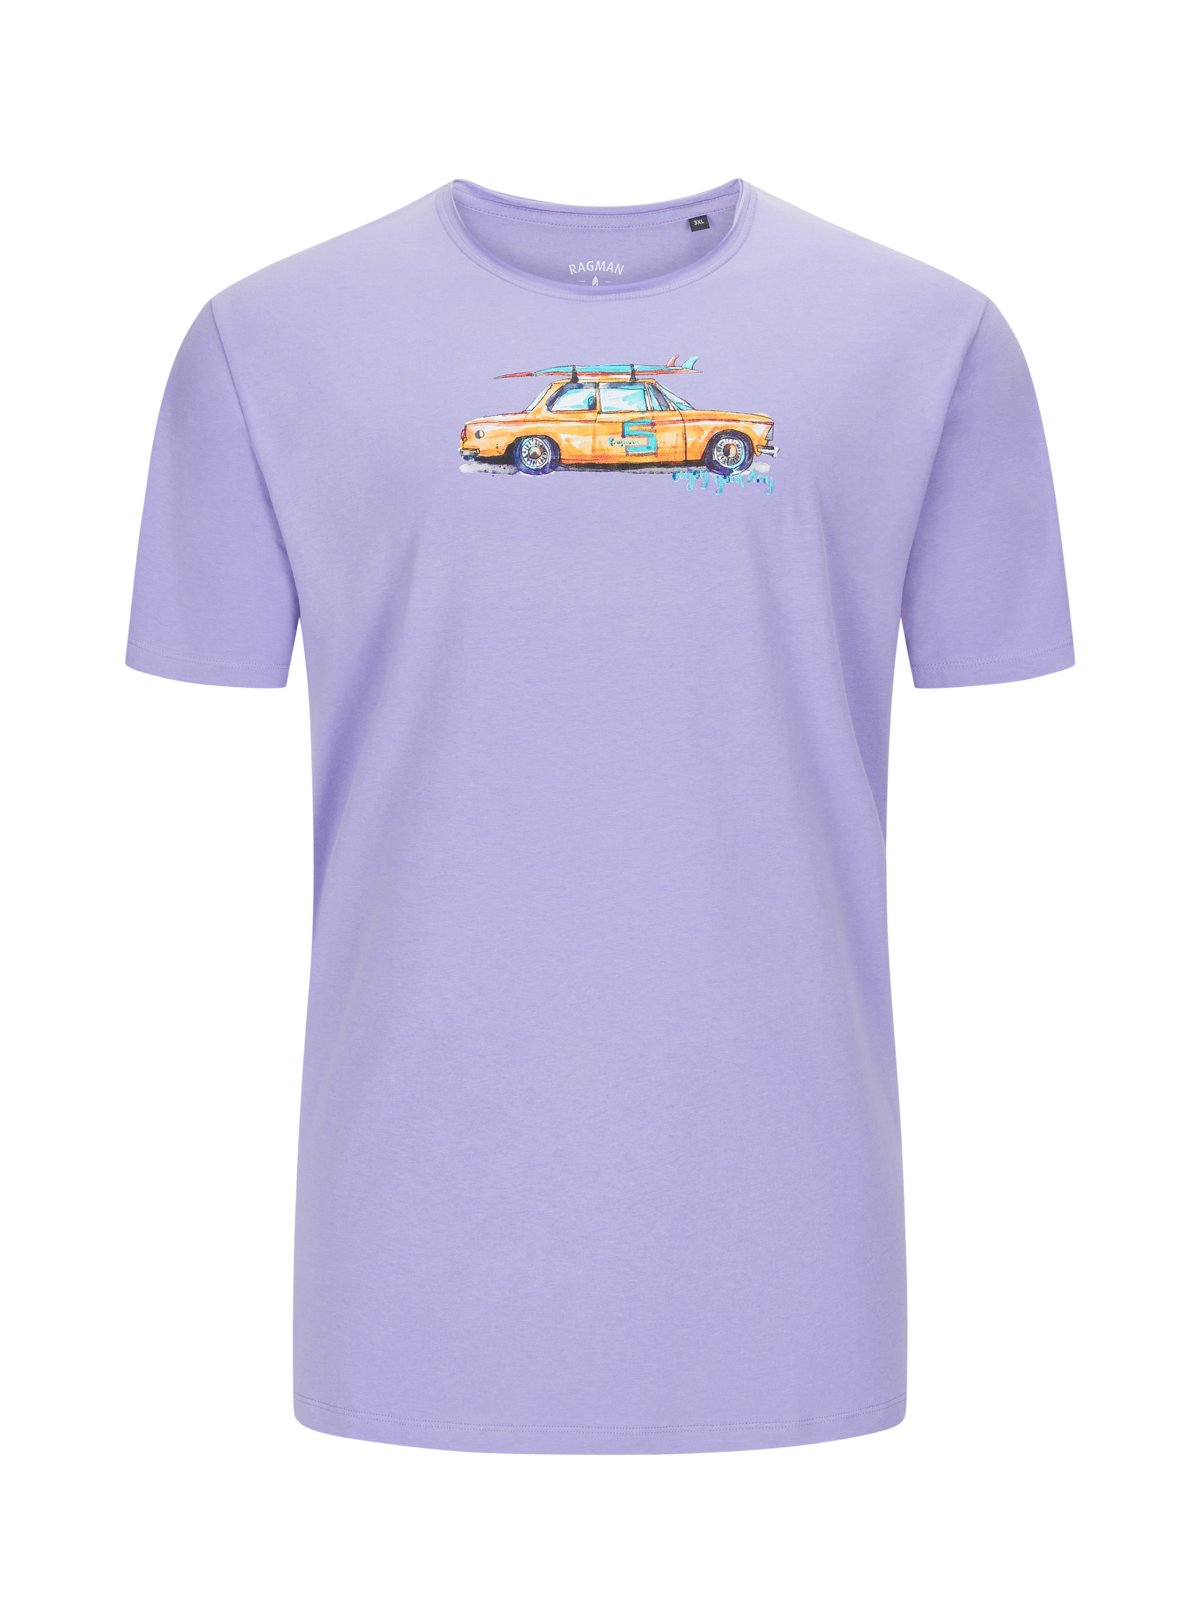 Ragman T-Shirt aus Baumwolle mit Auto-Motiv